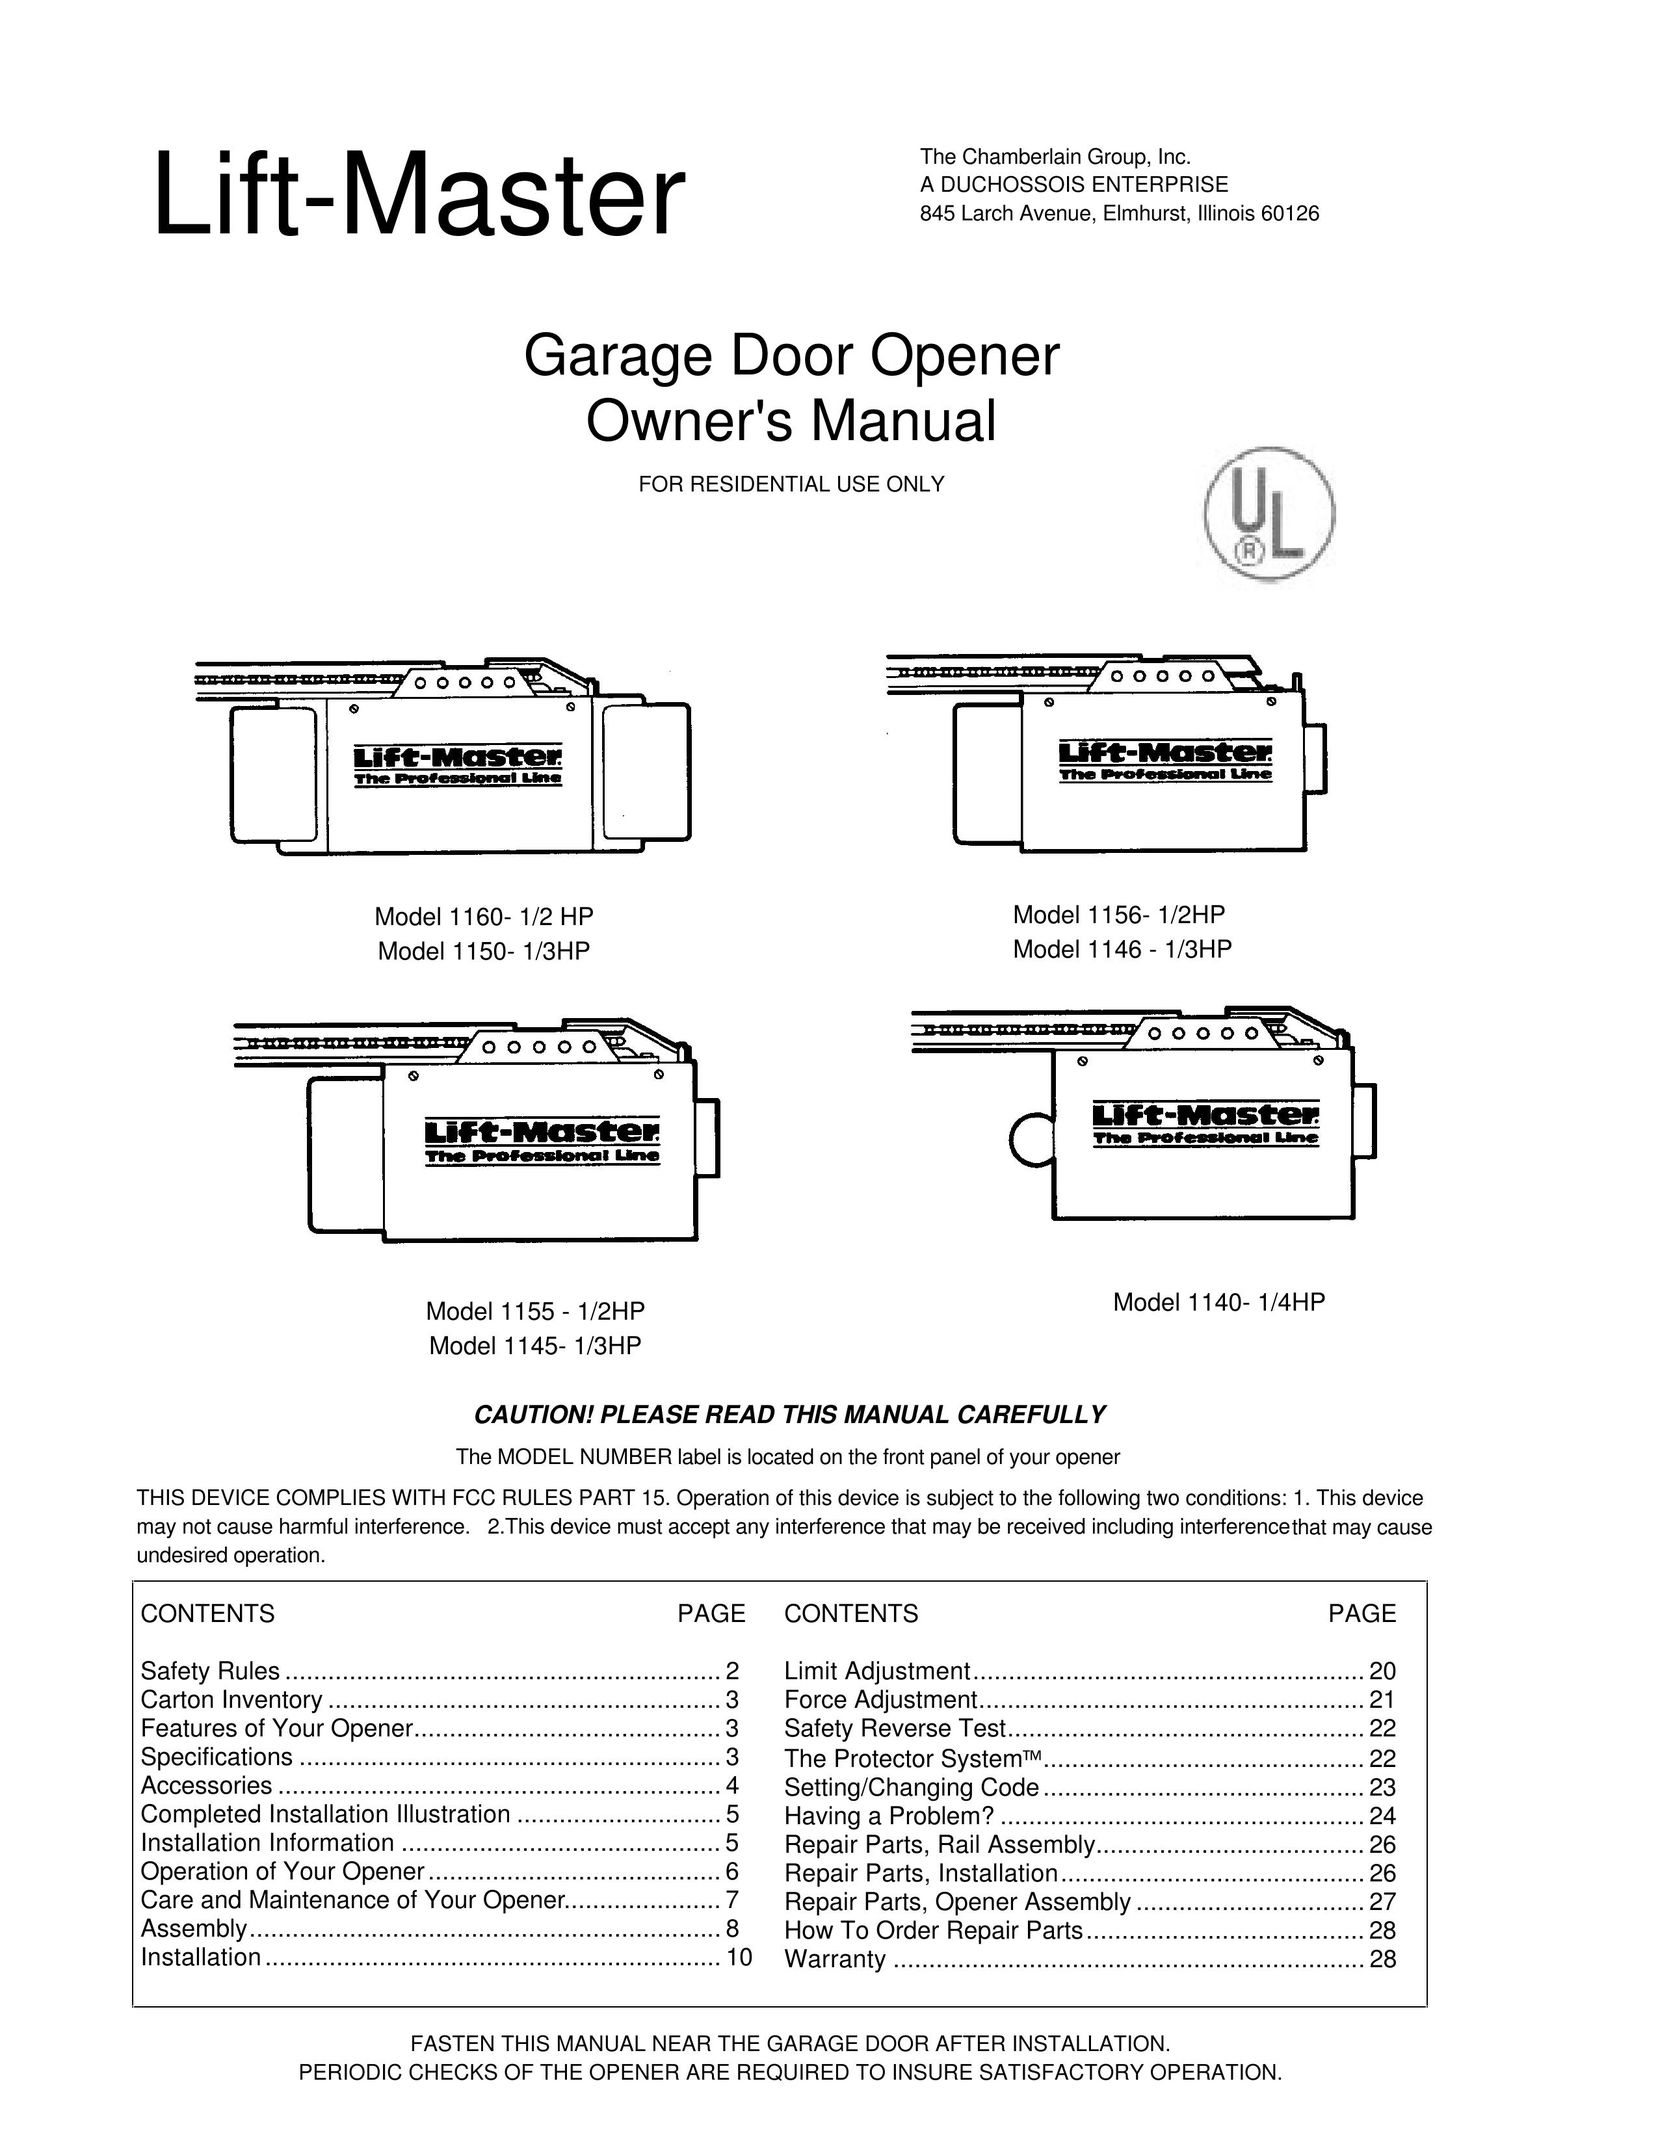 Chamberlain 1145- 1/3HP Garage Door Opener User Manual